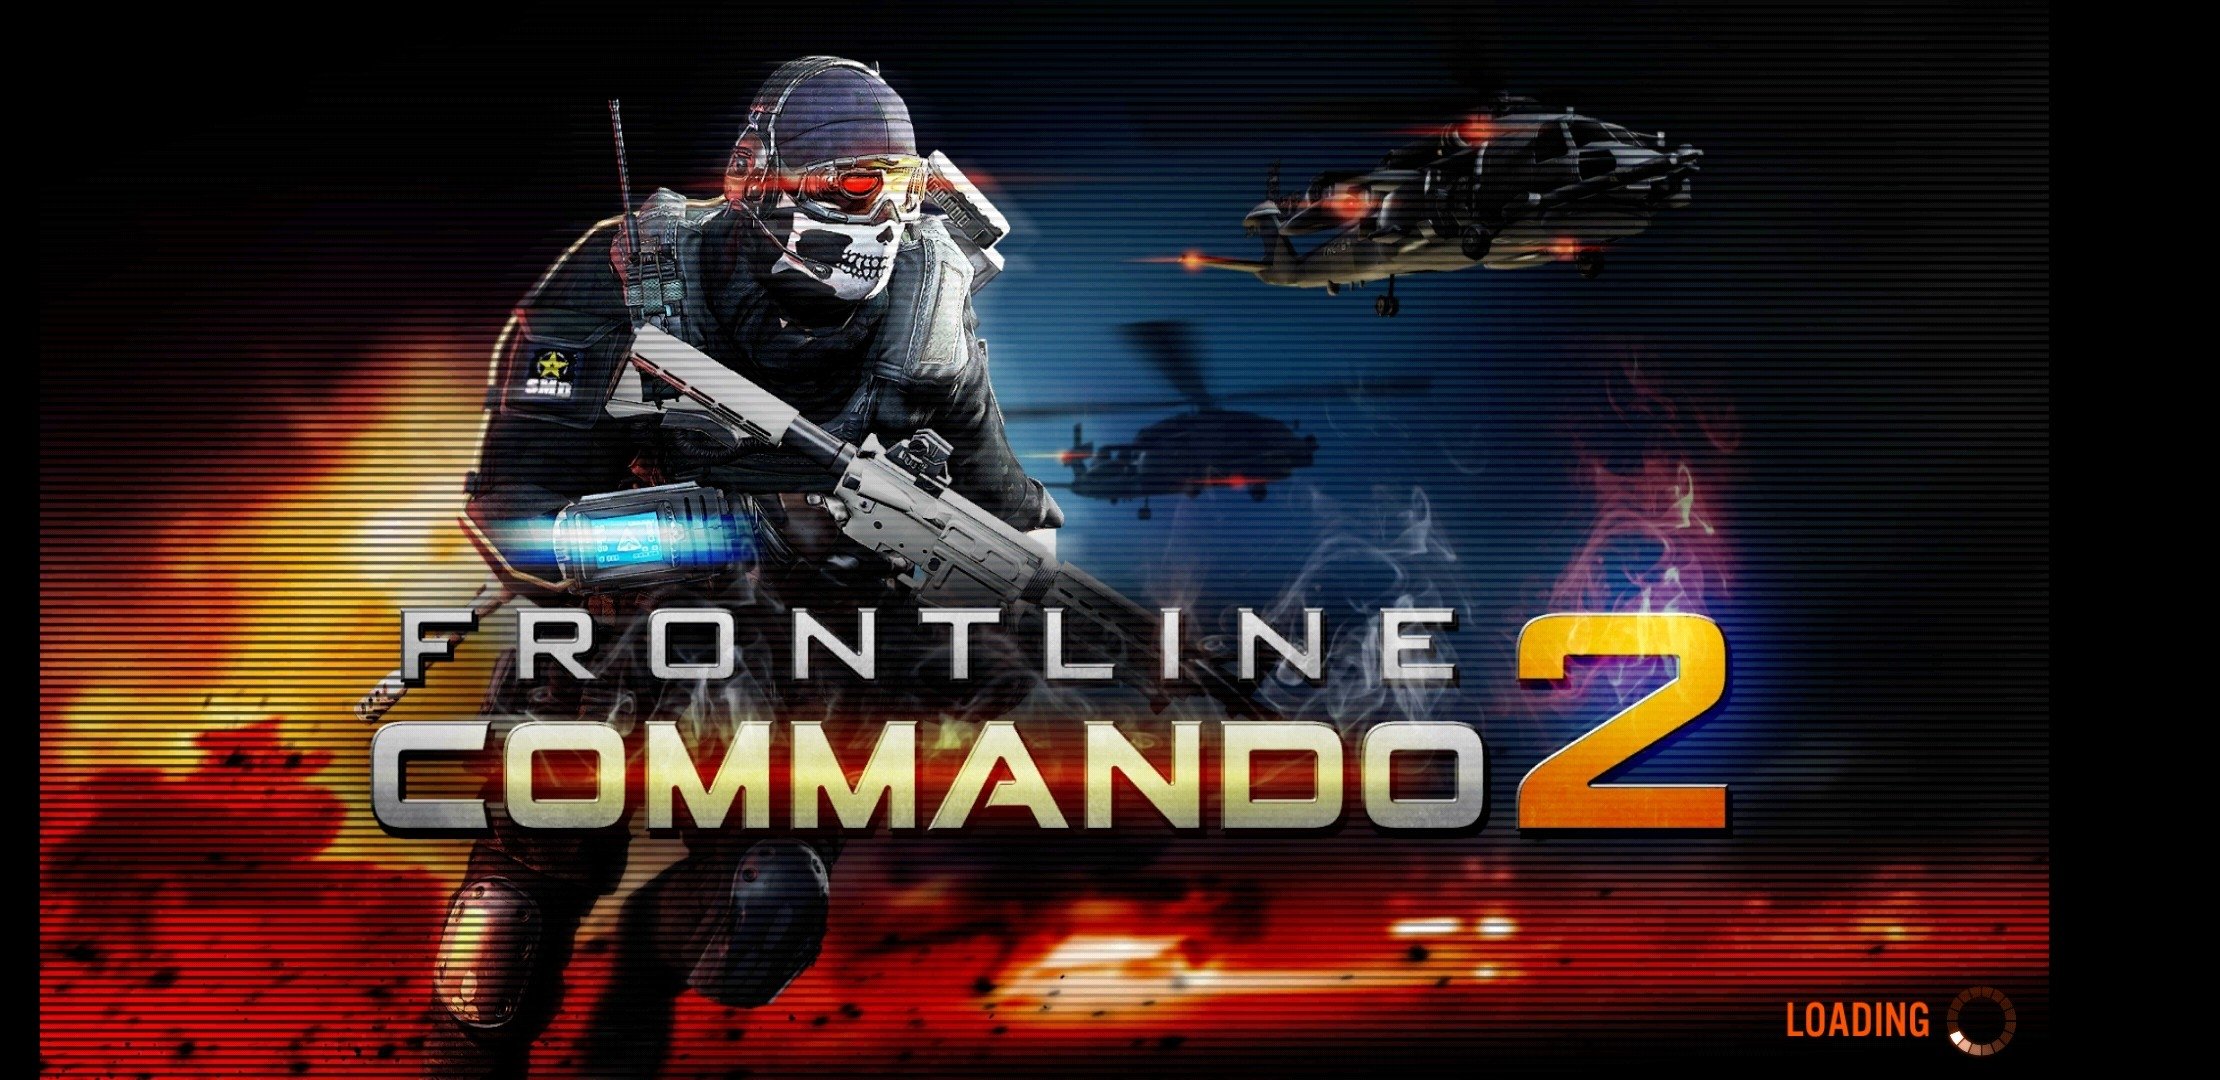 The Last Commando II for mac download